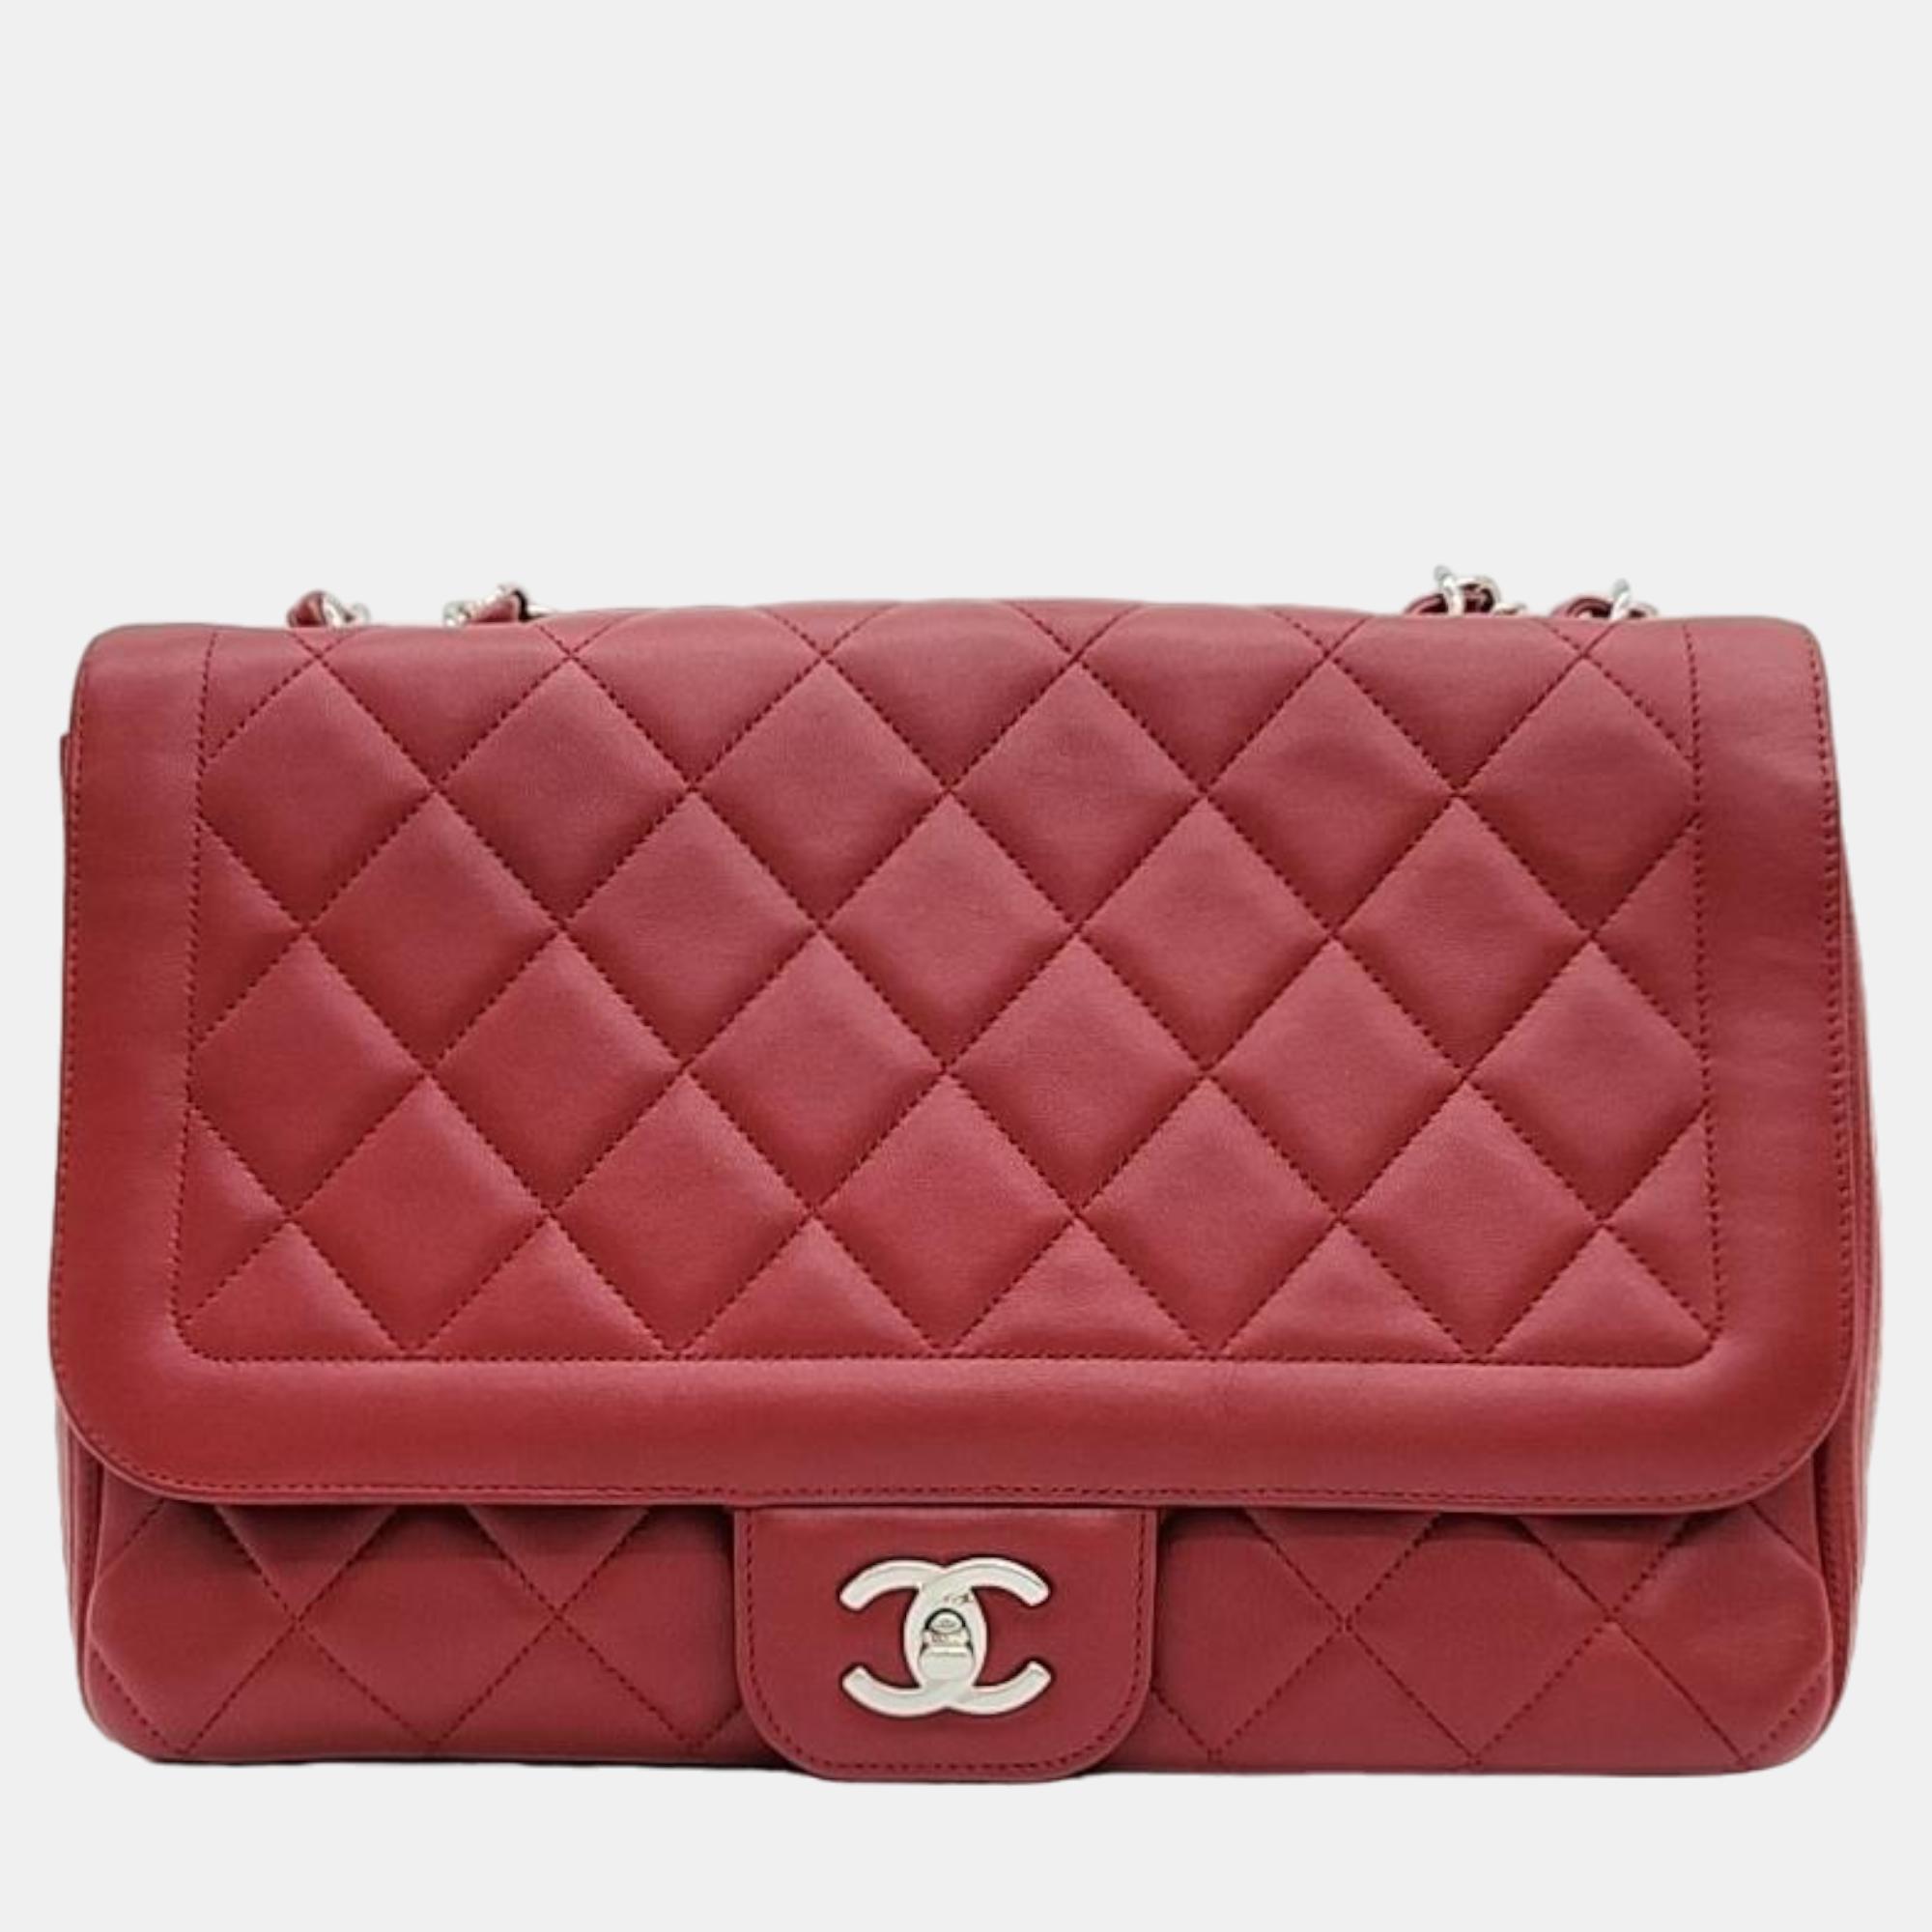 Chanel red leather flap shoulder bag